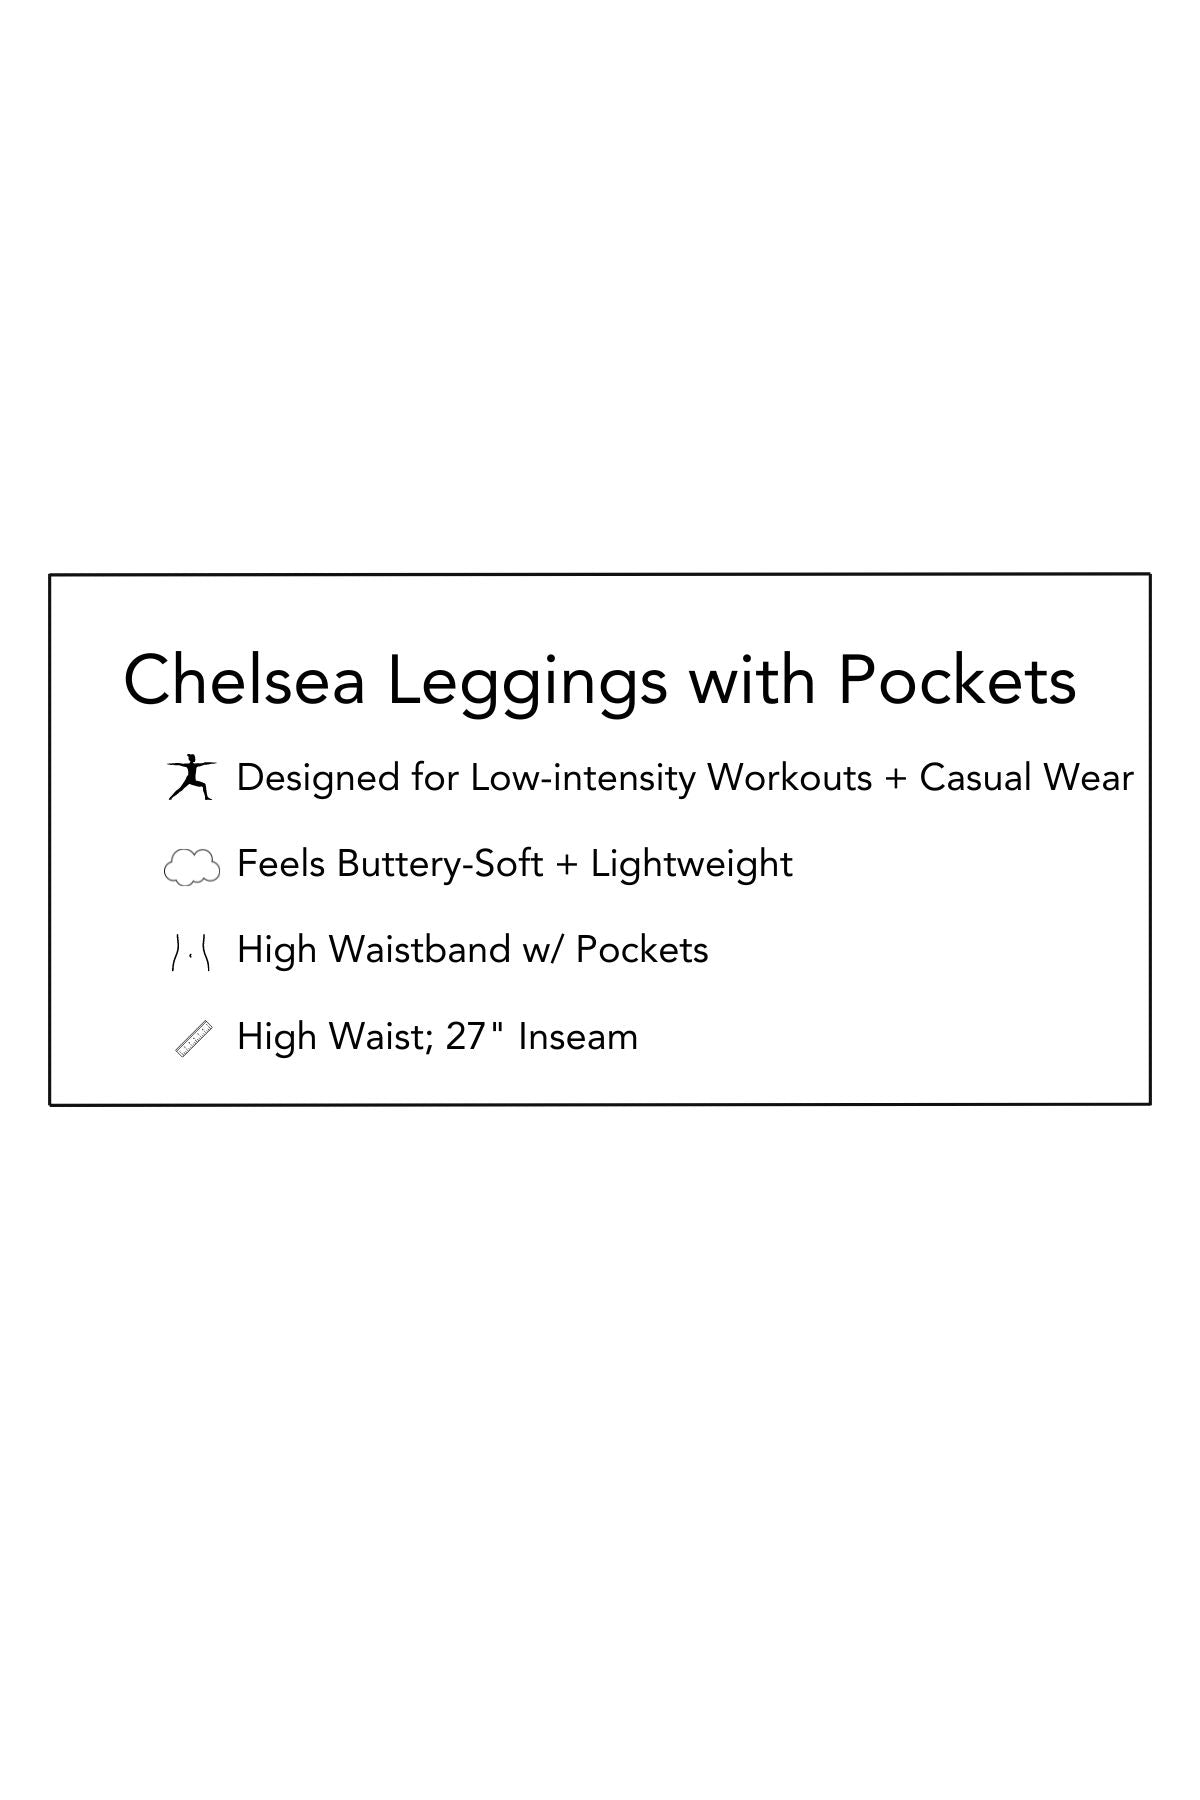 Chelsea Full Length Leggings with Pockets - Burgundy